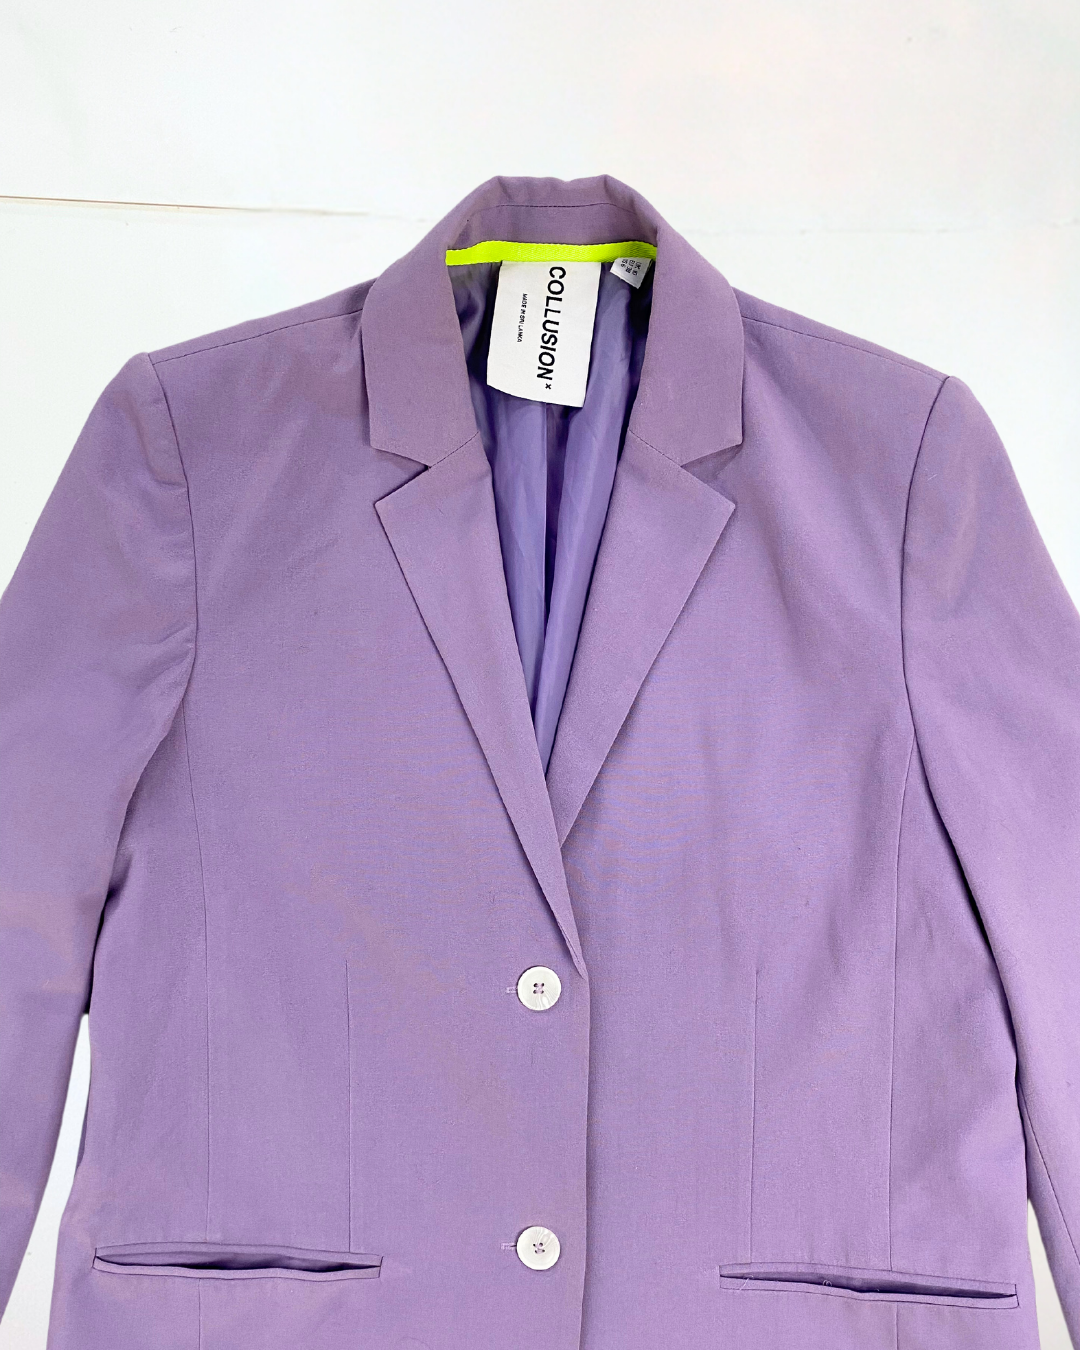 Purple Suit Bundle Size 12